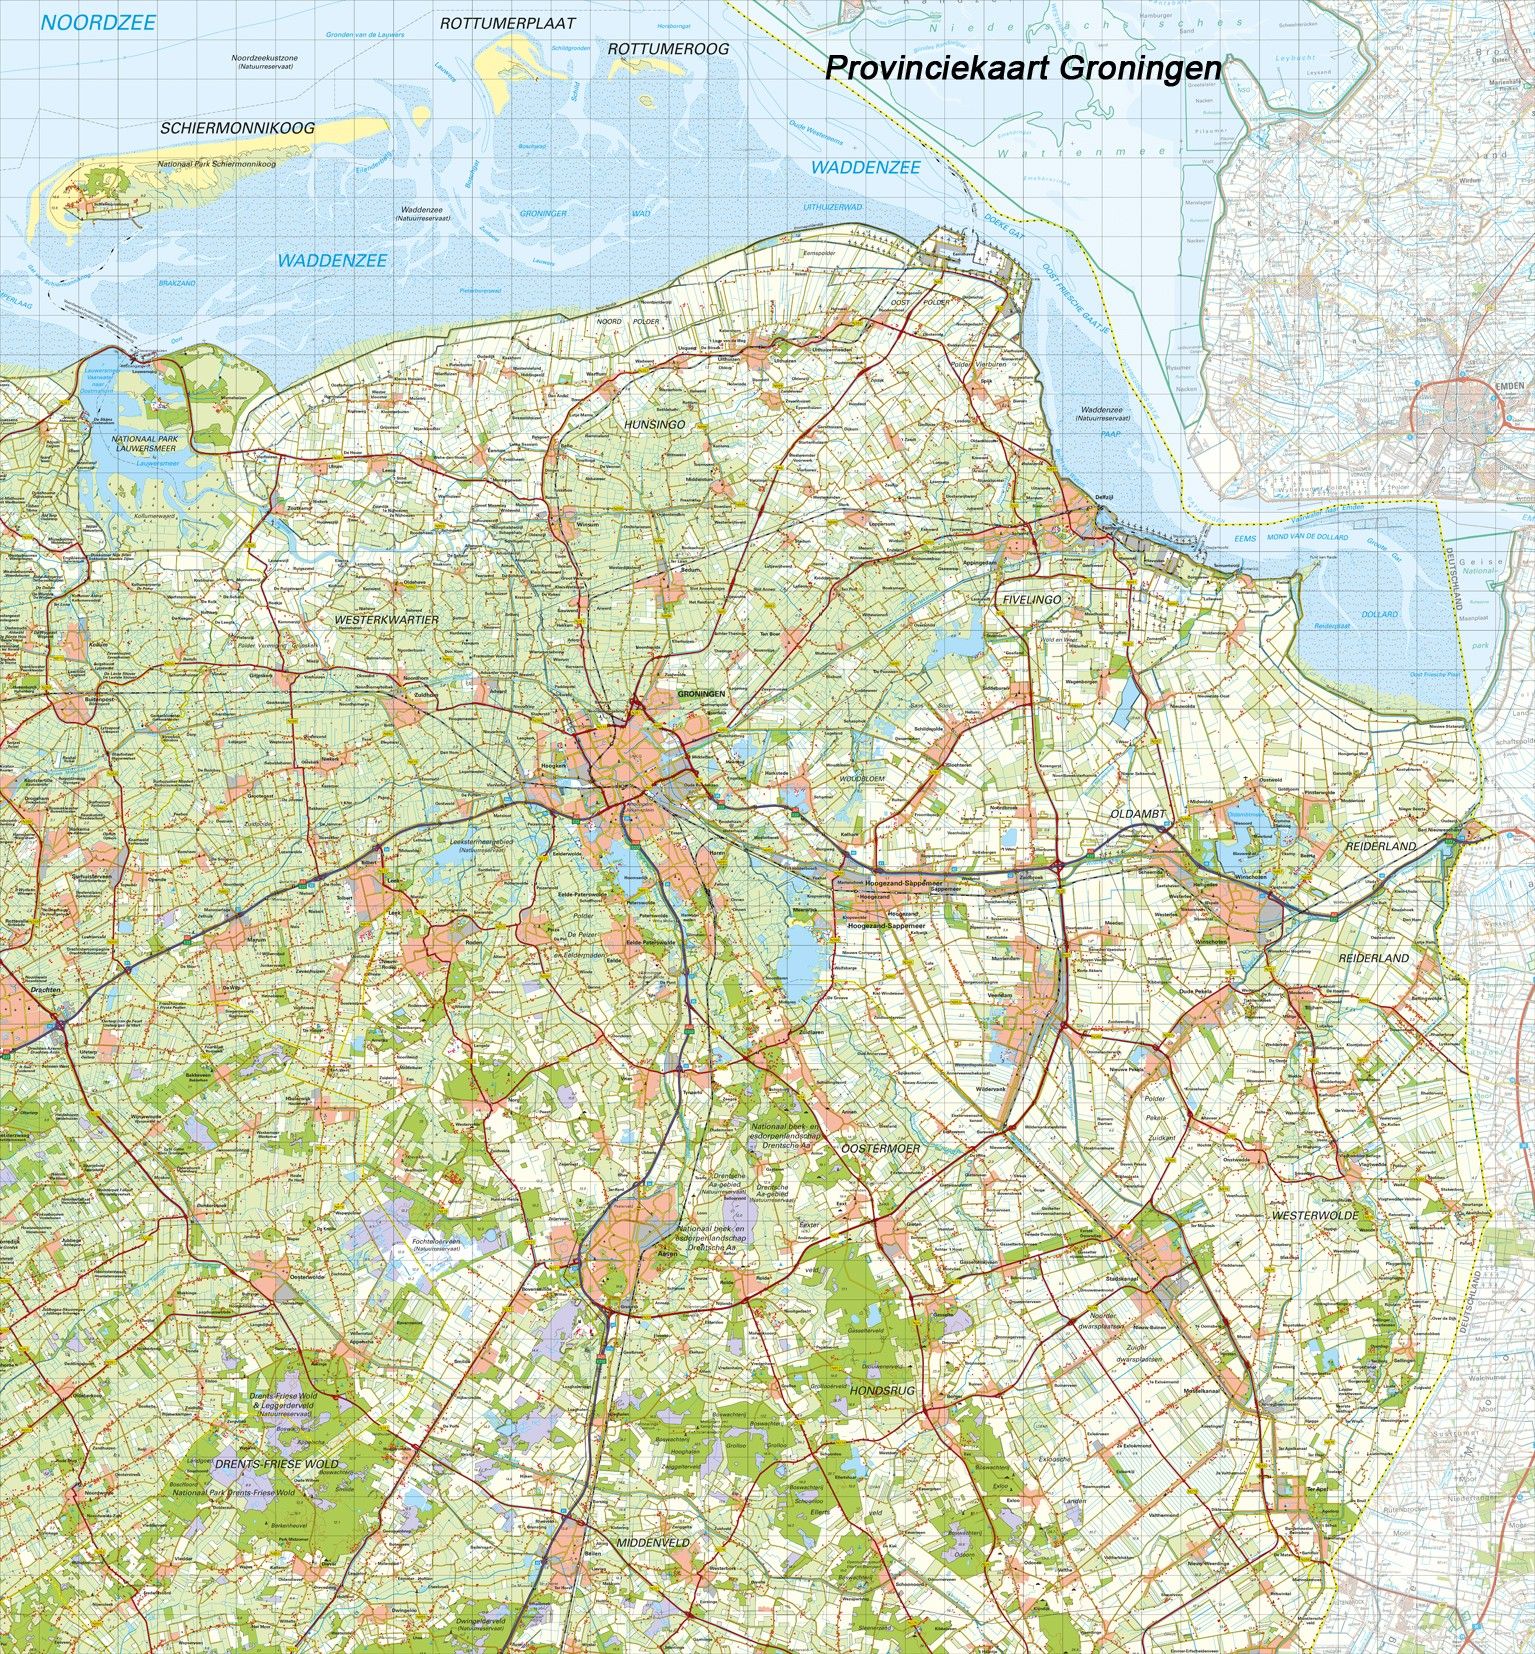 Digitale Provinciekaart Groningen 1:100.000